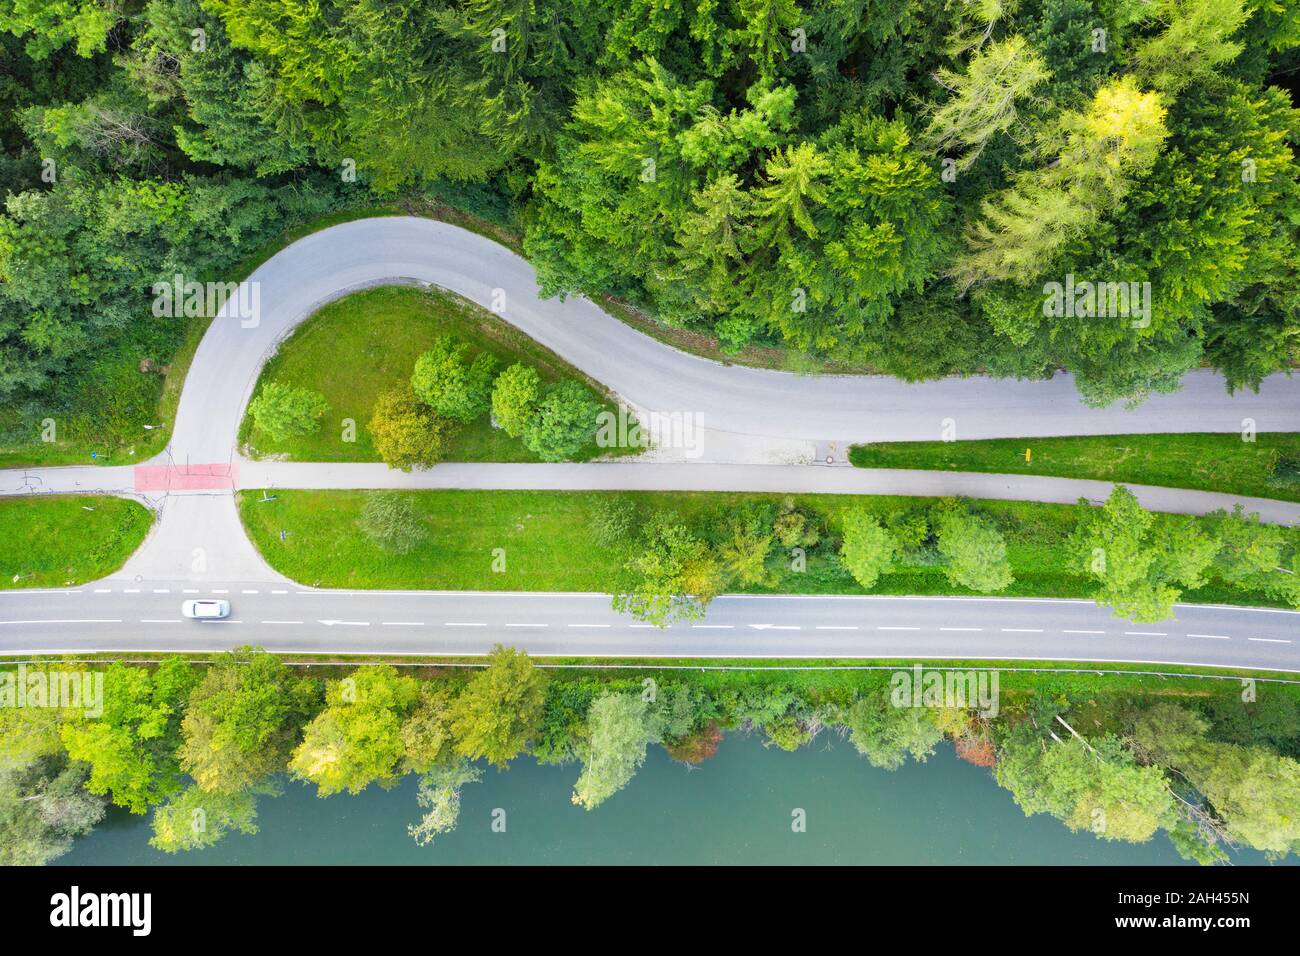 In Germania, in Baviera, Eurasburg, vista aerea del bordo del verde bosco di abete rosso e la giunzione di campagna autostrada Foto Stock